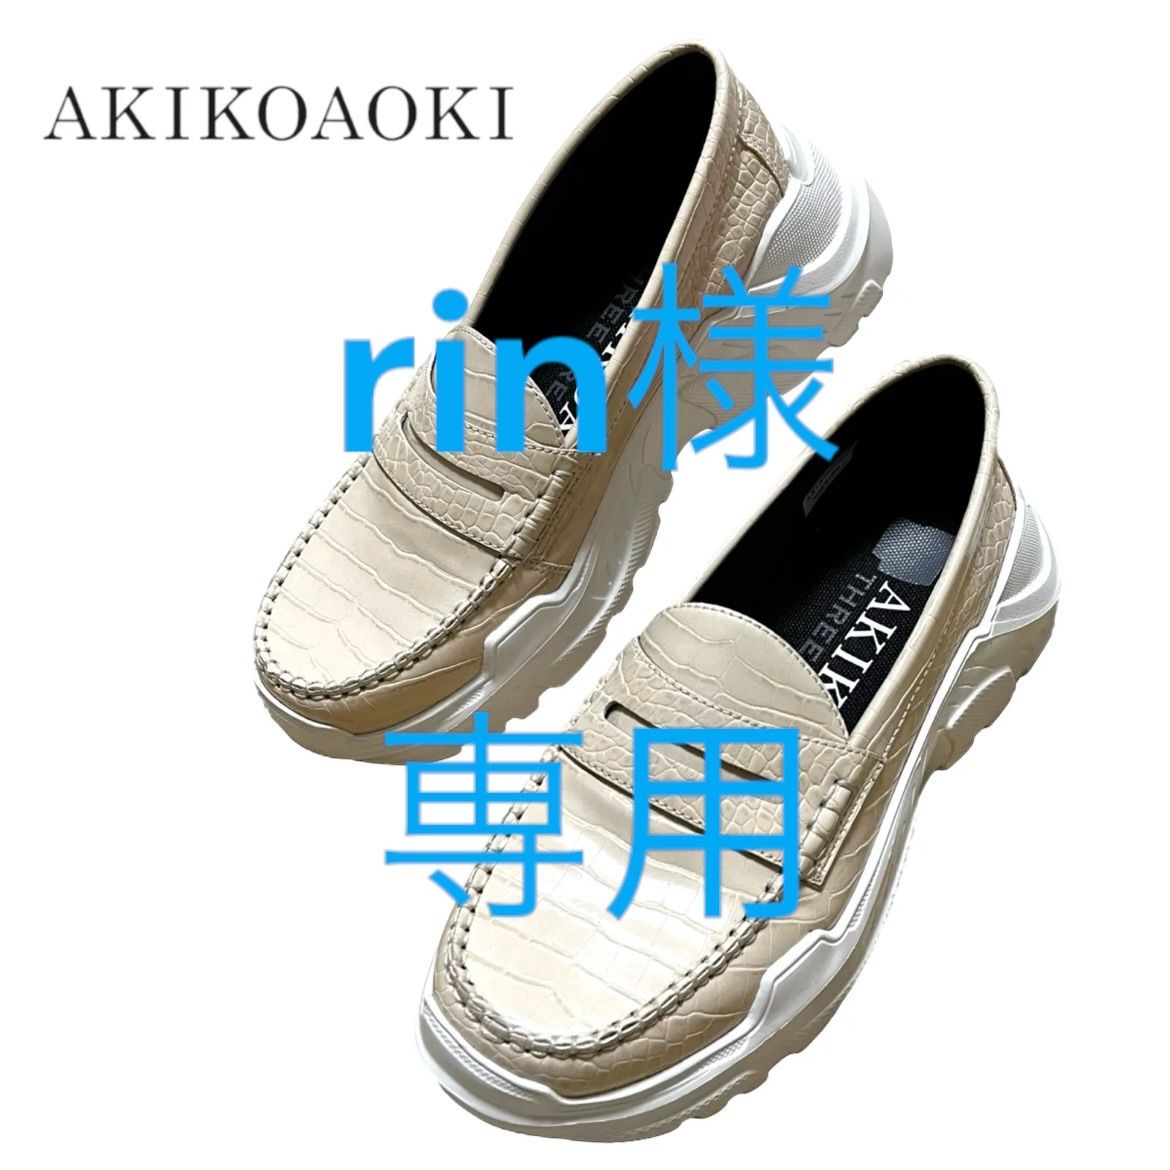 【極美品】アキコアオキ/AKIKOAOKI ローファー Regulated Gravity-crocodile textured pattern  Ivory×WH